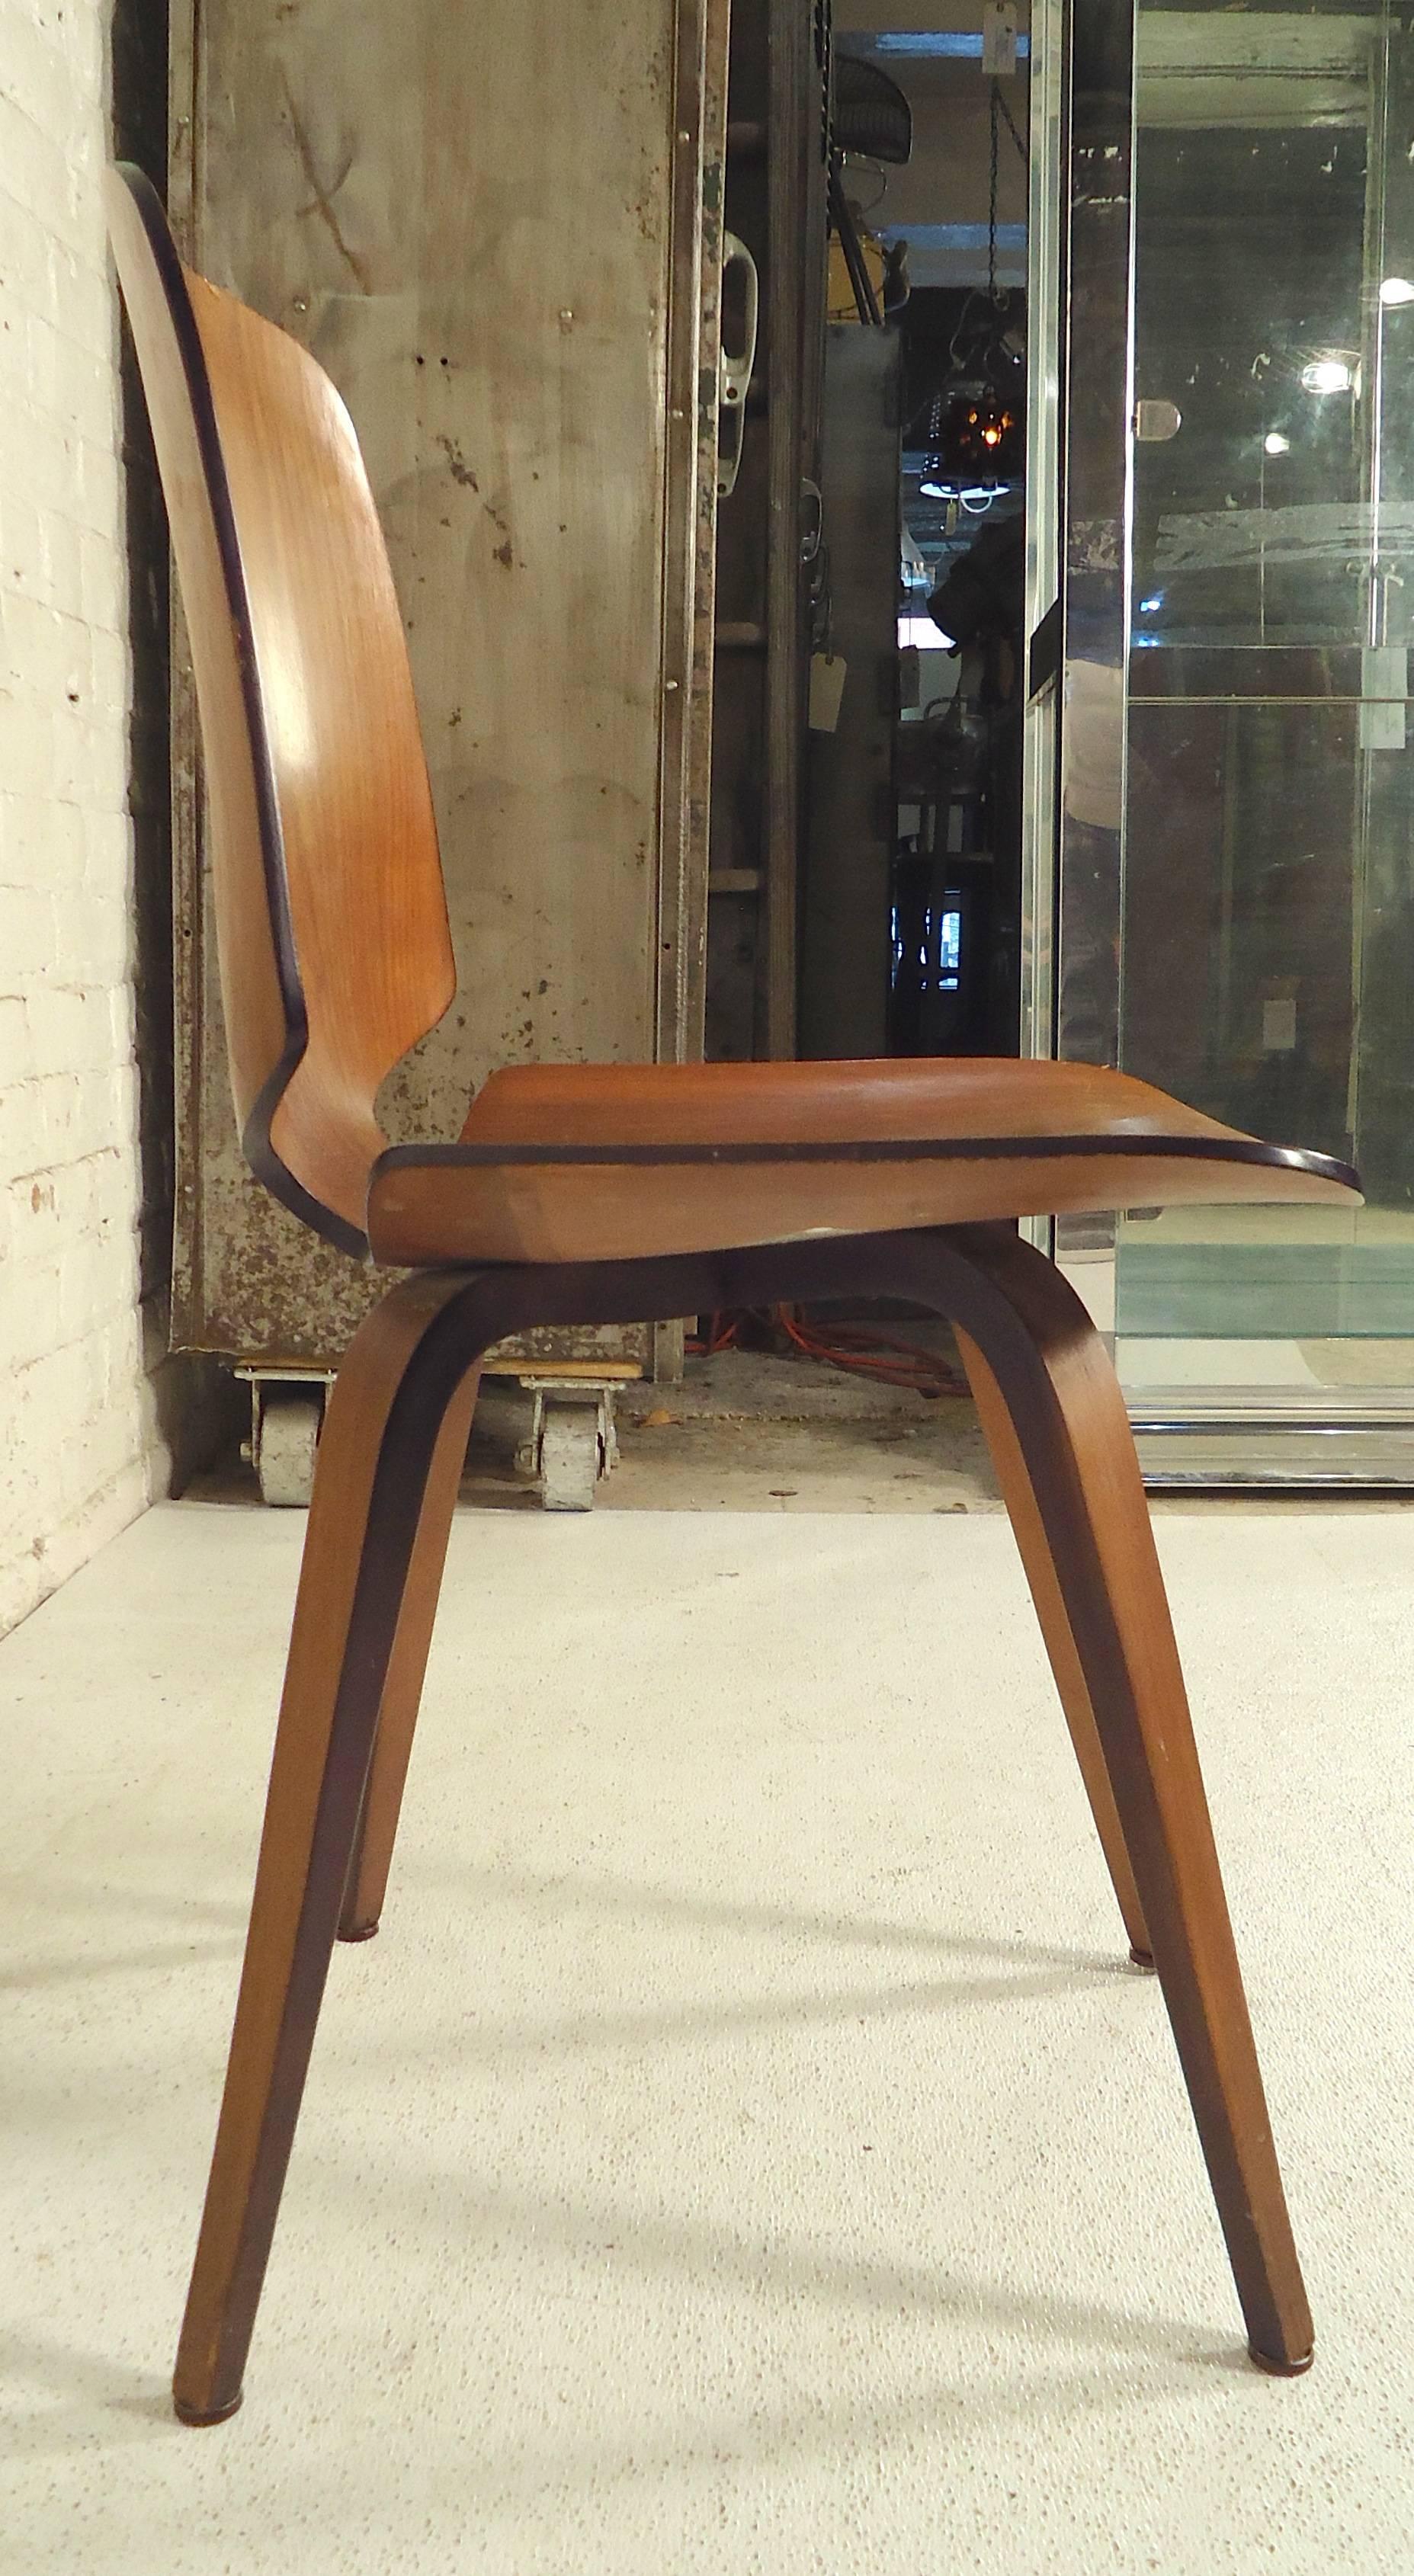 Chaise d'appoint en bois courbé emblématique de la modernité du milieu du siècle, conçue par George Mulhauser pour Plycraft (Massachusetts). Les deux labels d'origine sont encore intacts, révélant une date de fabrication originale du 12 avril 1965.